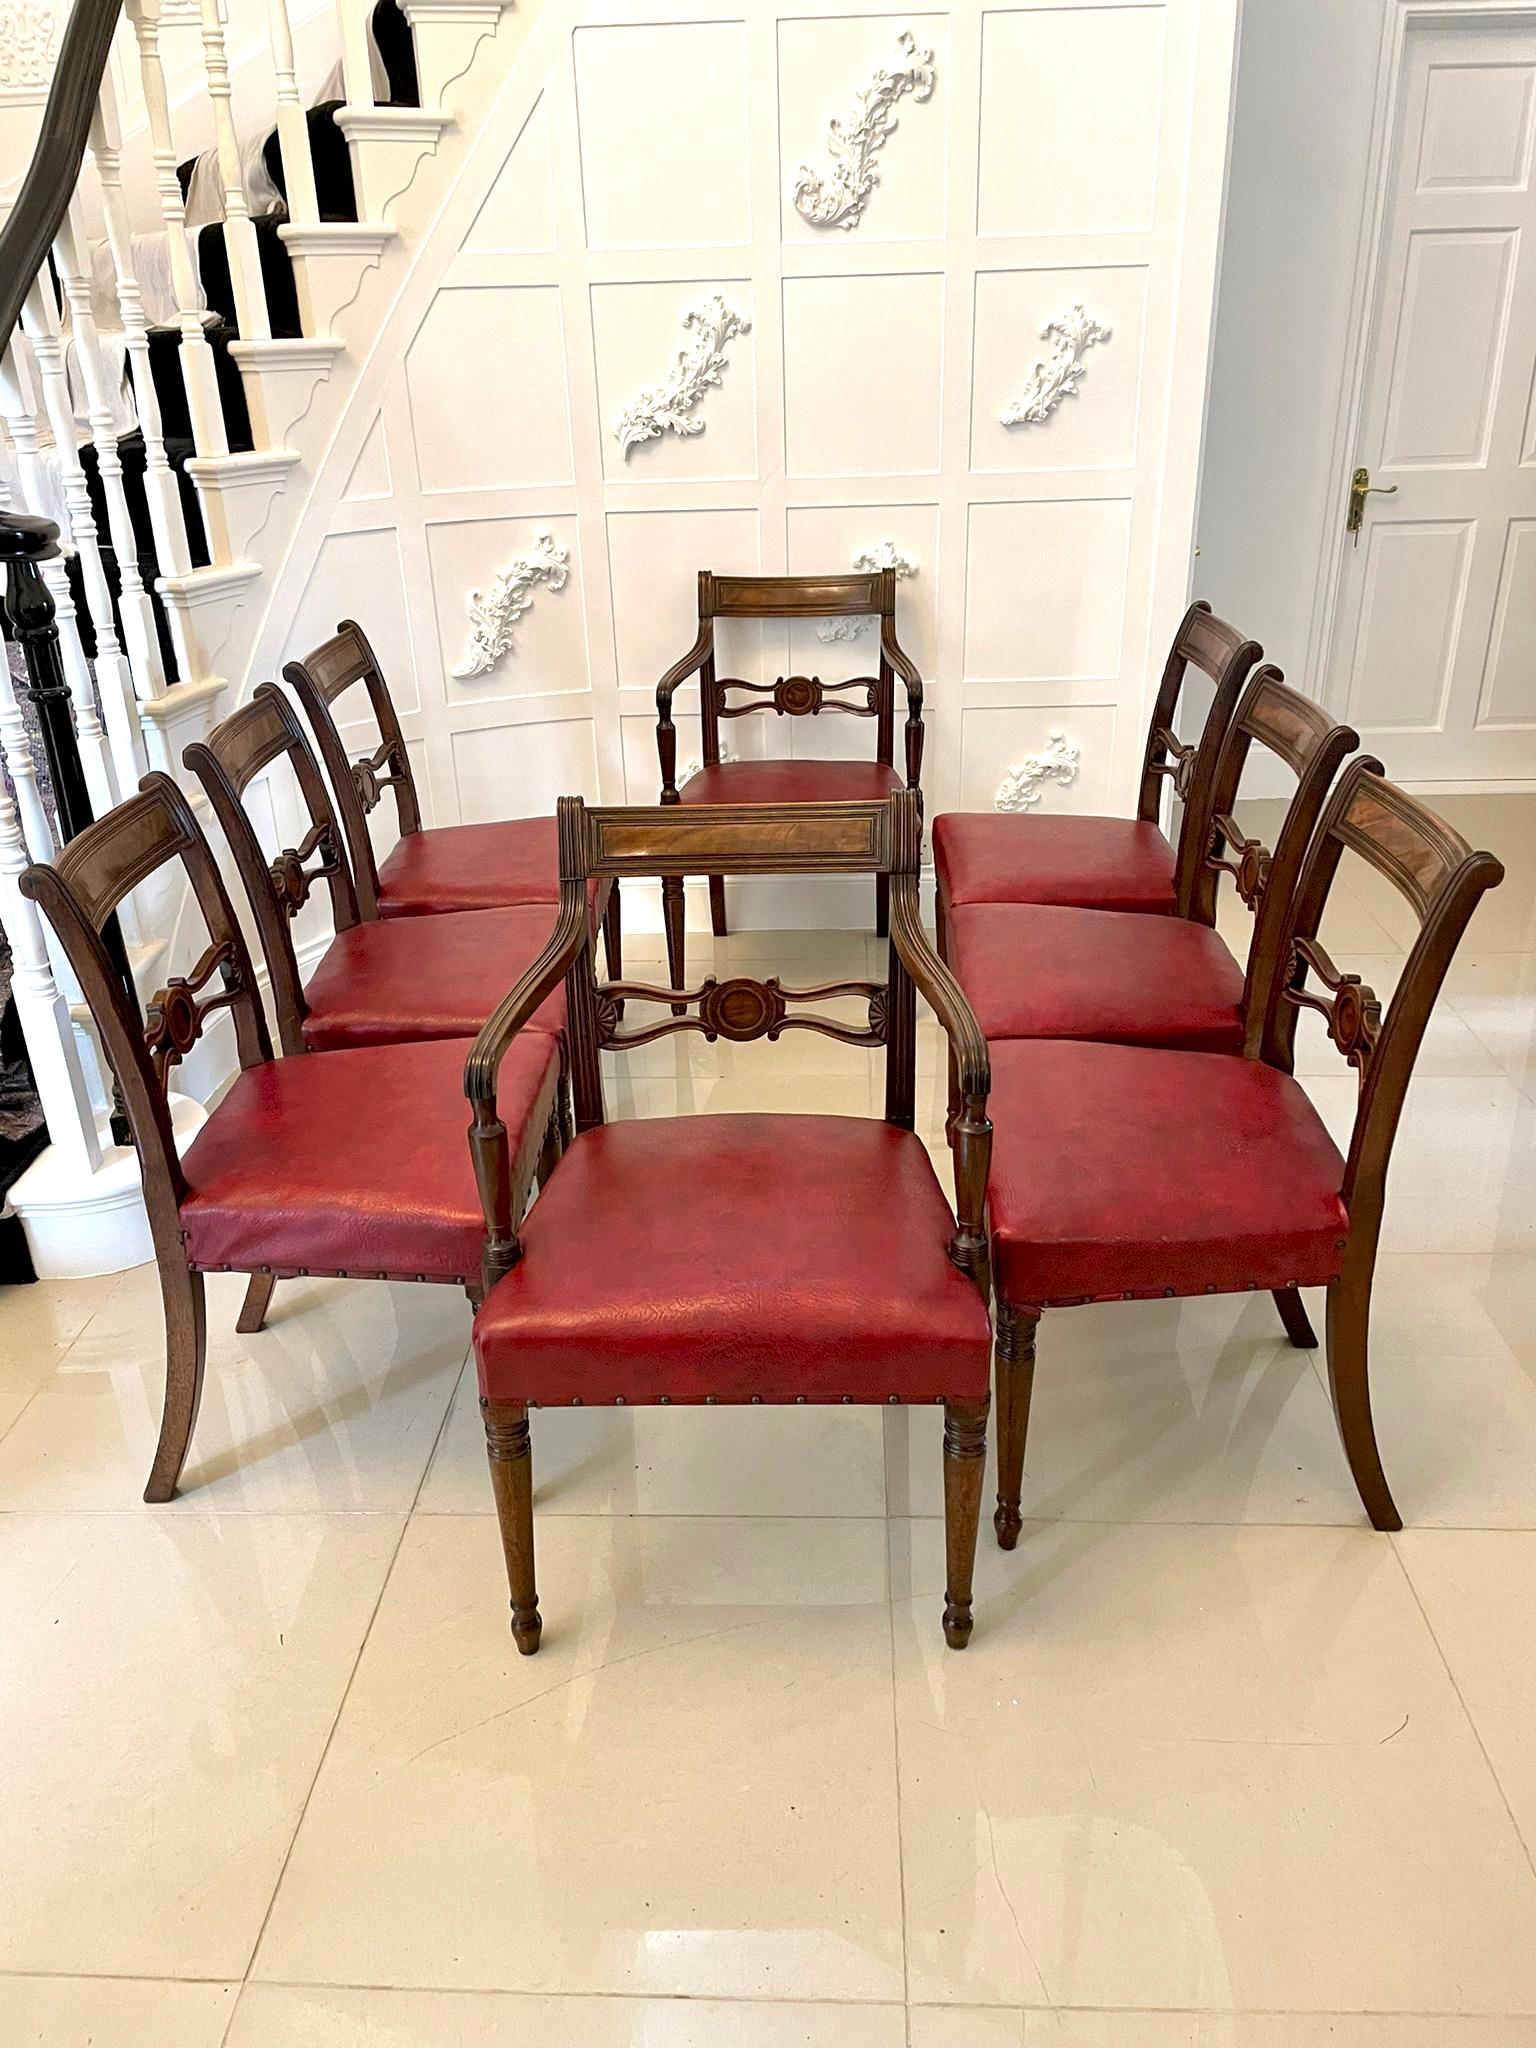 Feiner Satz von acht antiken George IIIl Qualität Mahagoni Esszimmerstühle, bestehend aus zwei Carver Stühle und sechs einzelne Stühle in Originalzustand mit einer Qualität geriffelt oberen Schiene und geschnitzt geformt Mahagoni Splat in der Mitte.